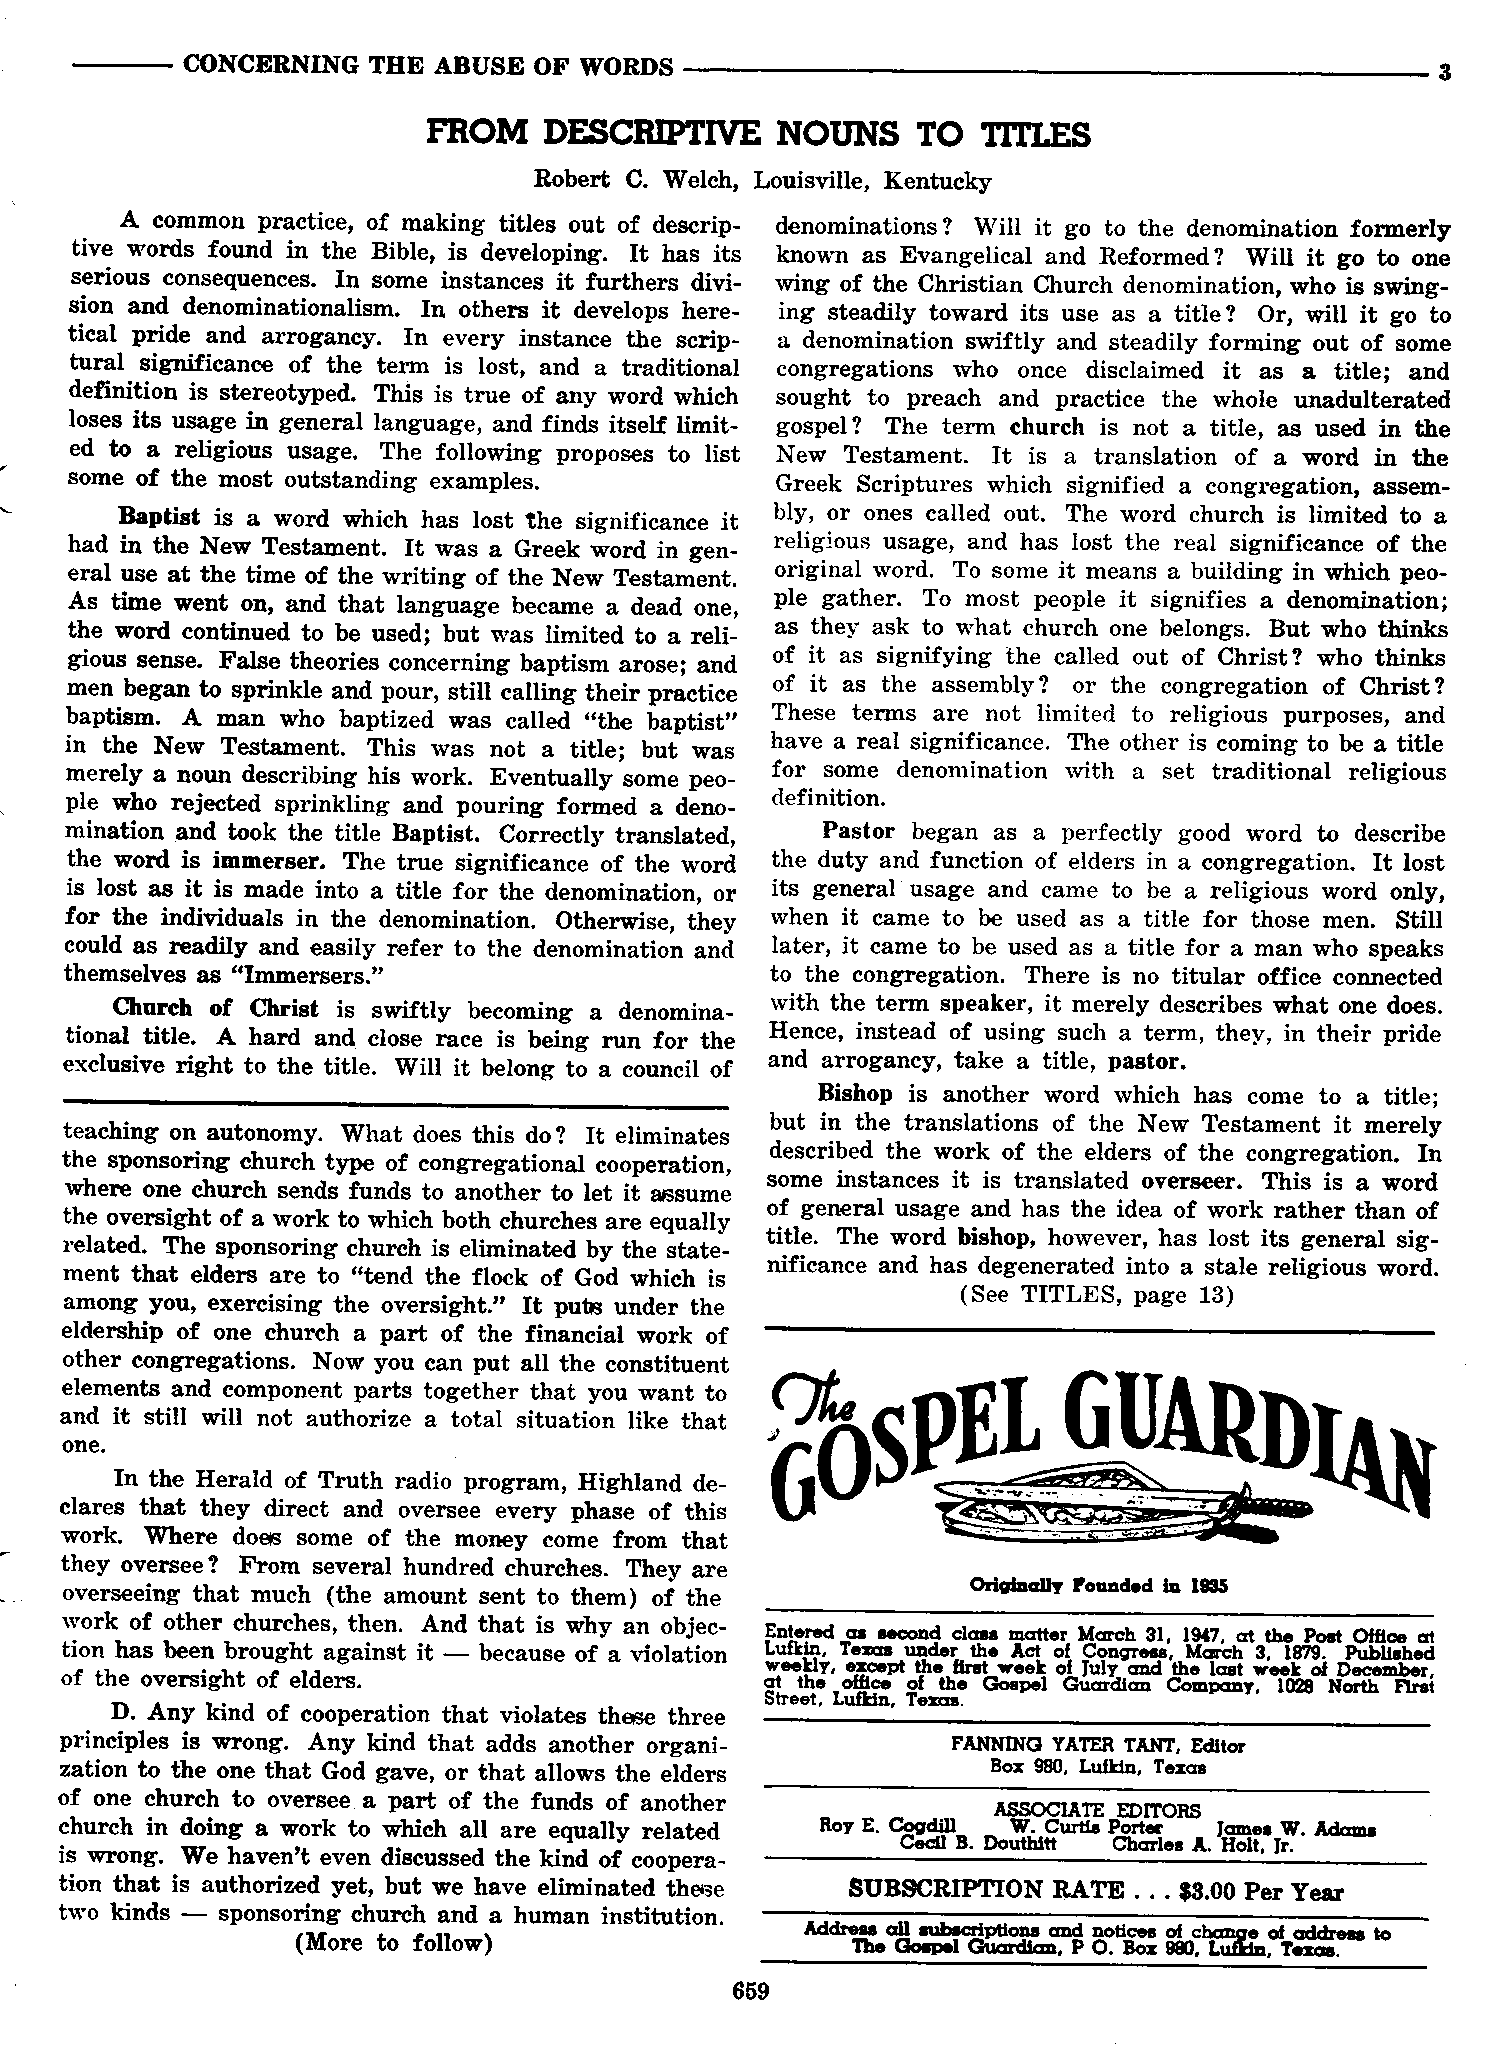 Gospel Guardian Original: Vol.9 No.42 Pg.3